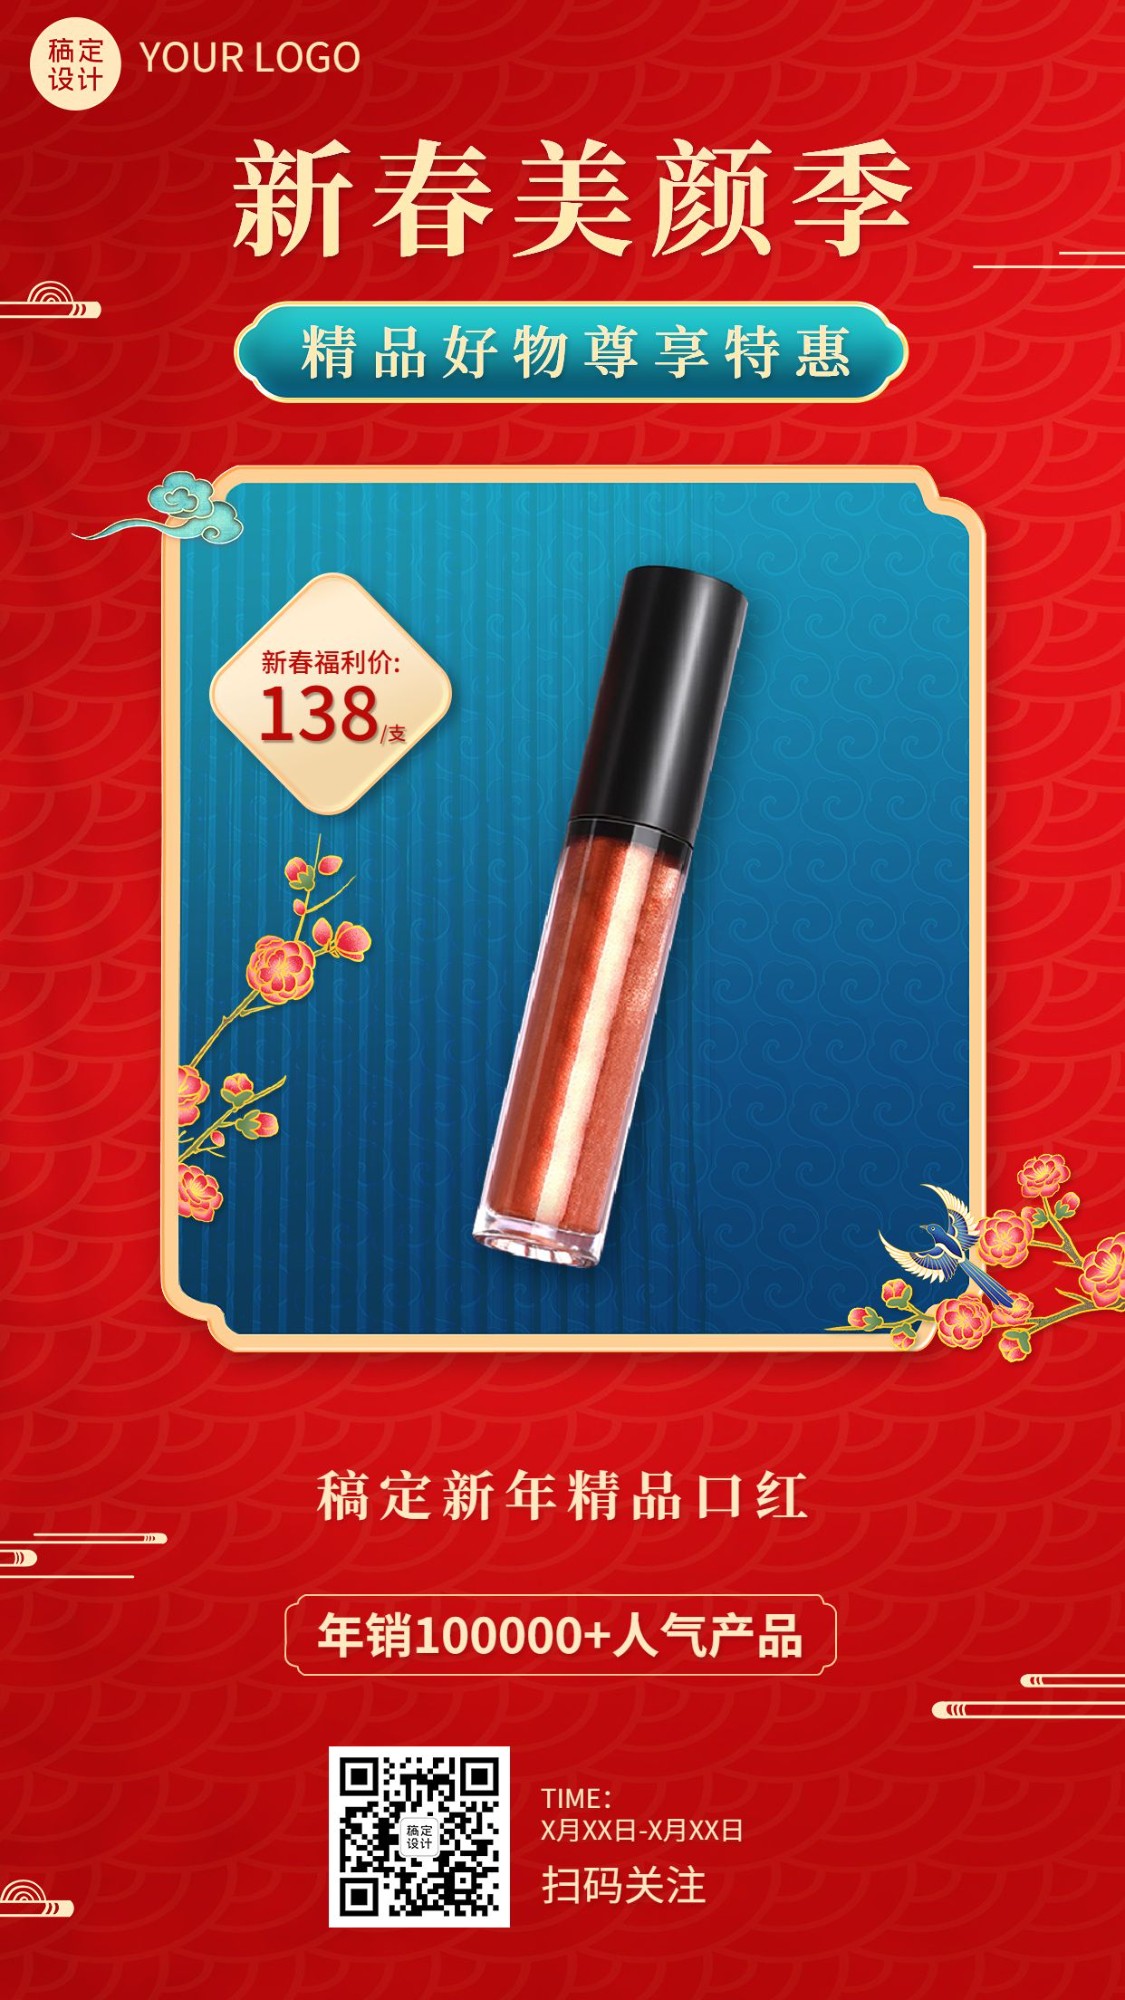 春节美容美妆产品展示营销中国风手机海报预览效果